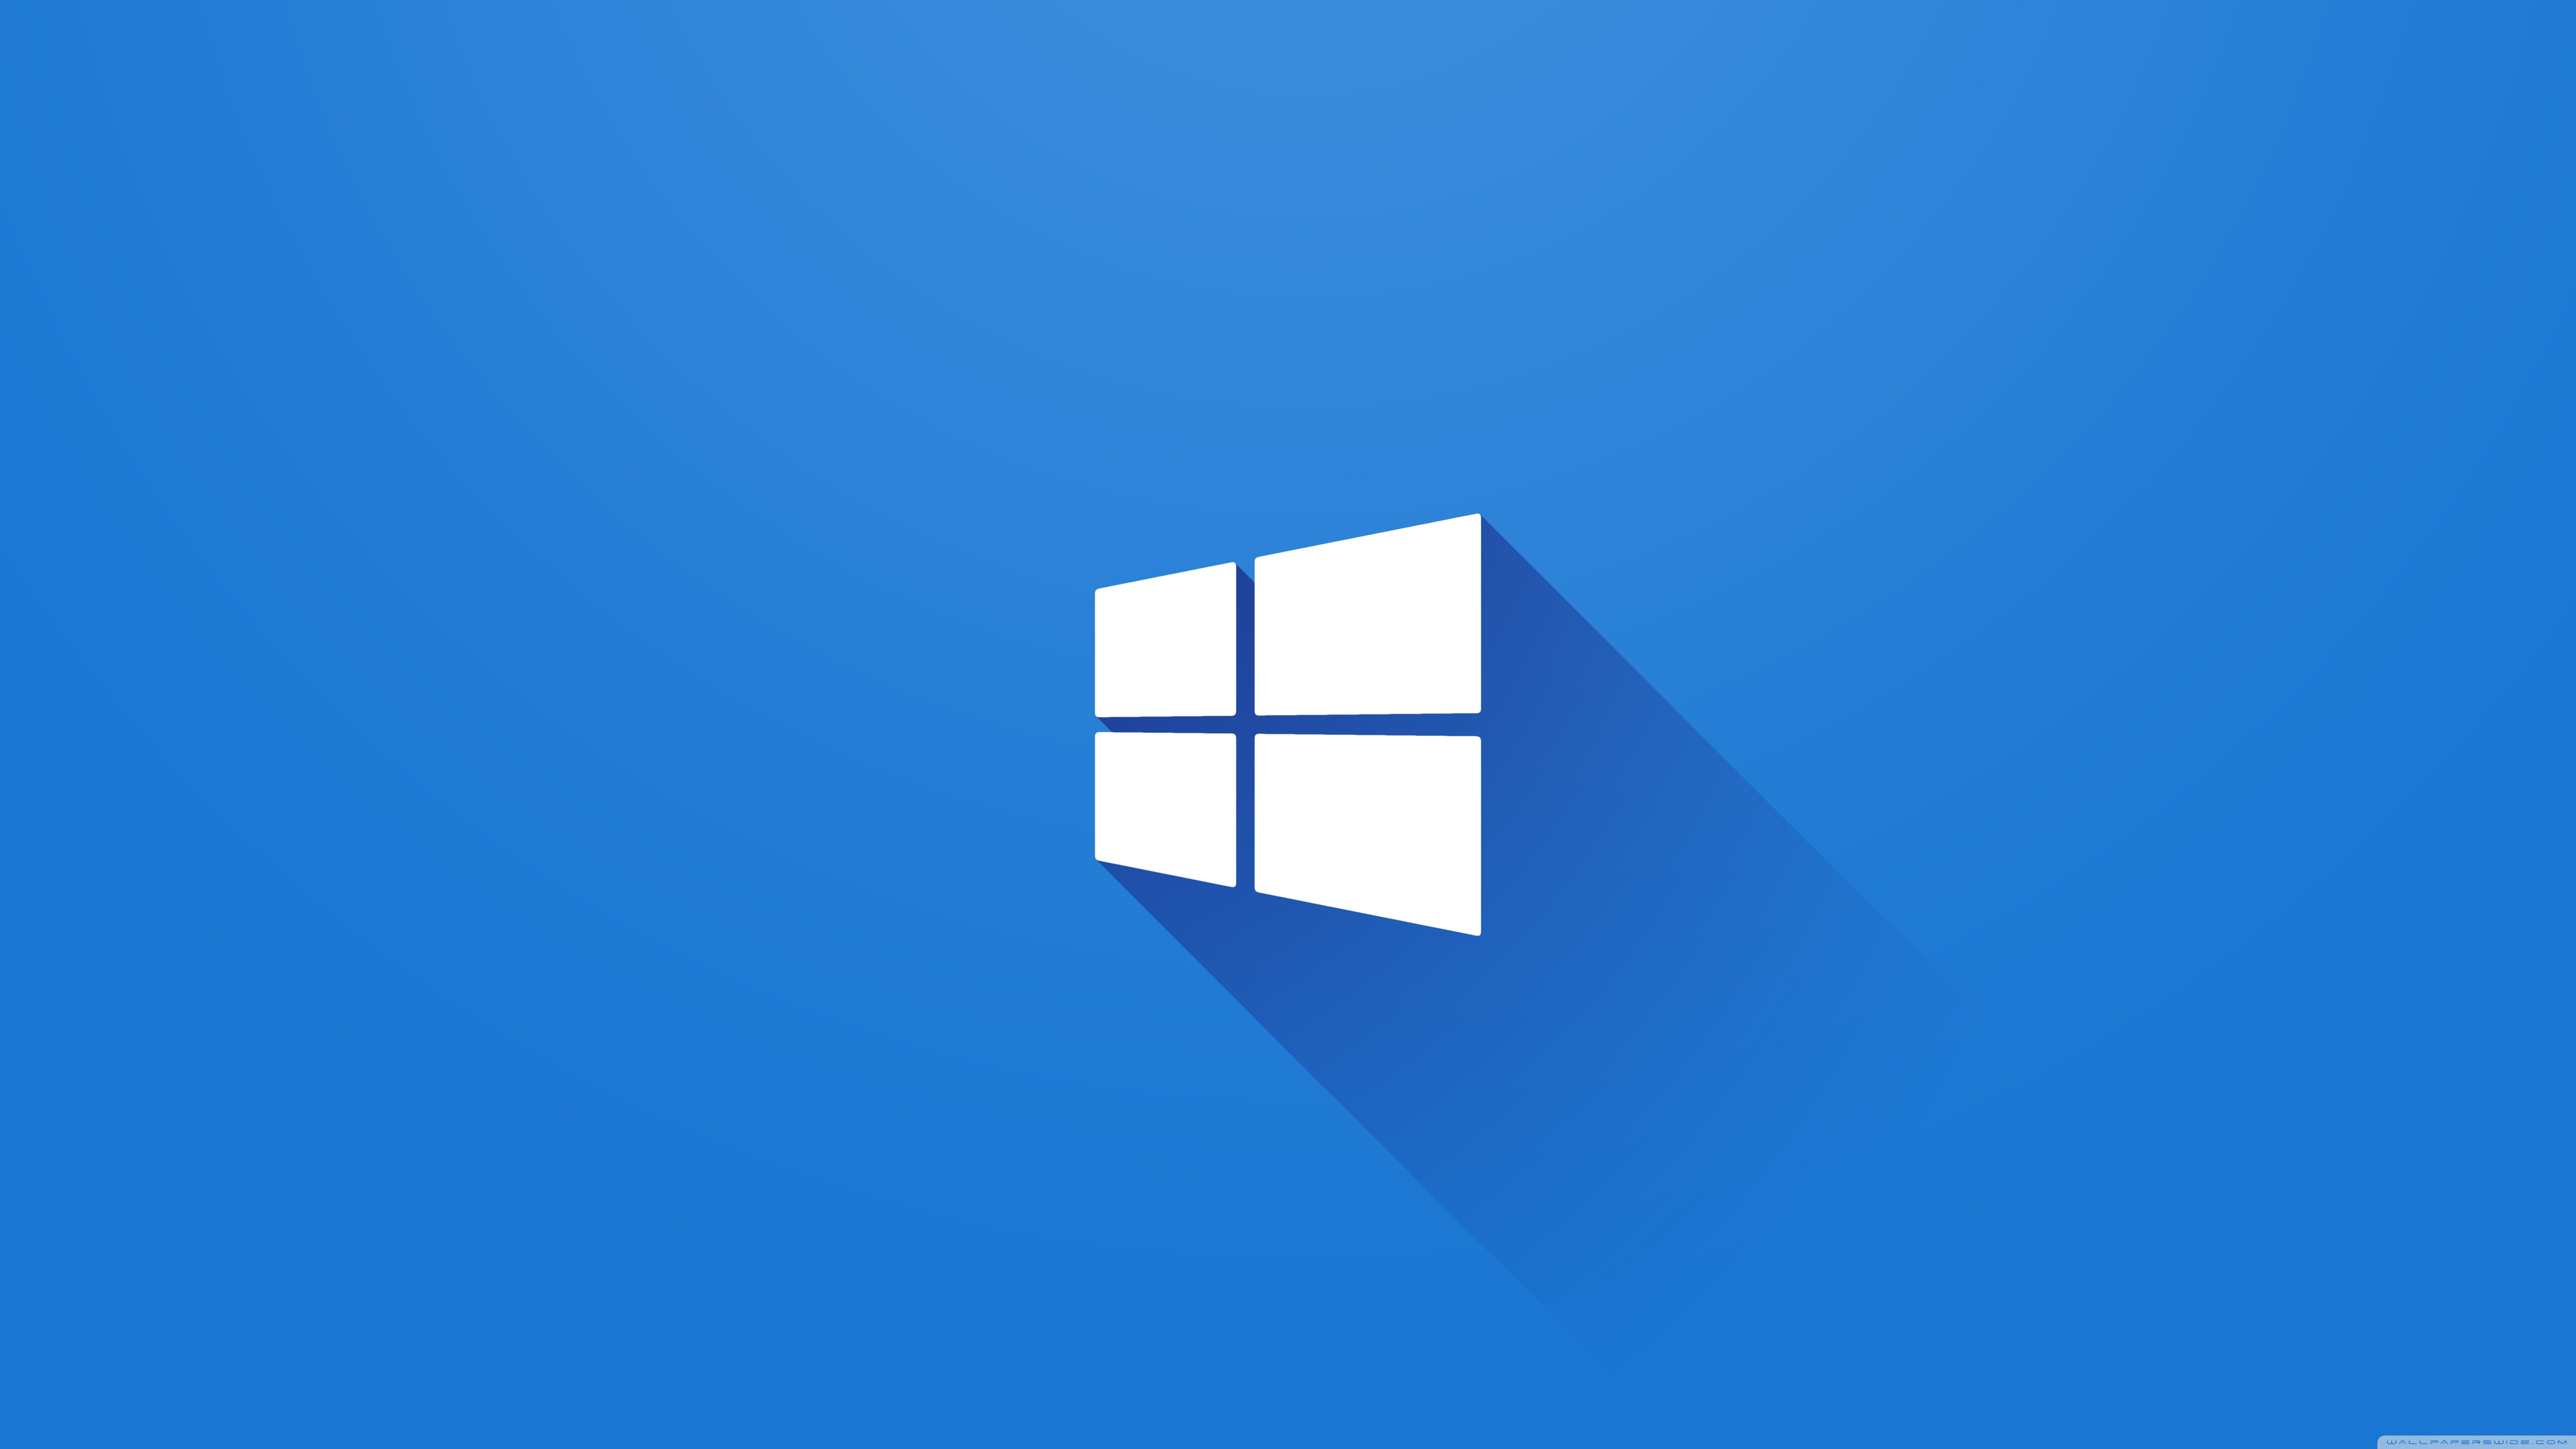 Standard Windows 7 Wallpaper 4k 60324 HD Wallpaper Download. 59+ Window